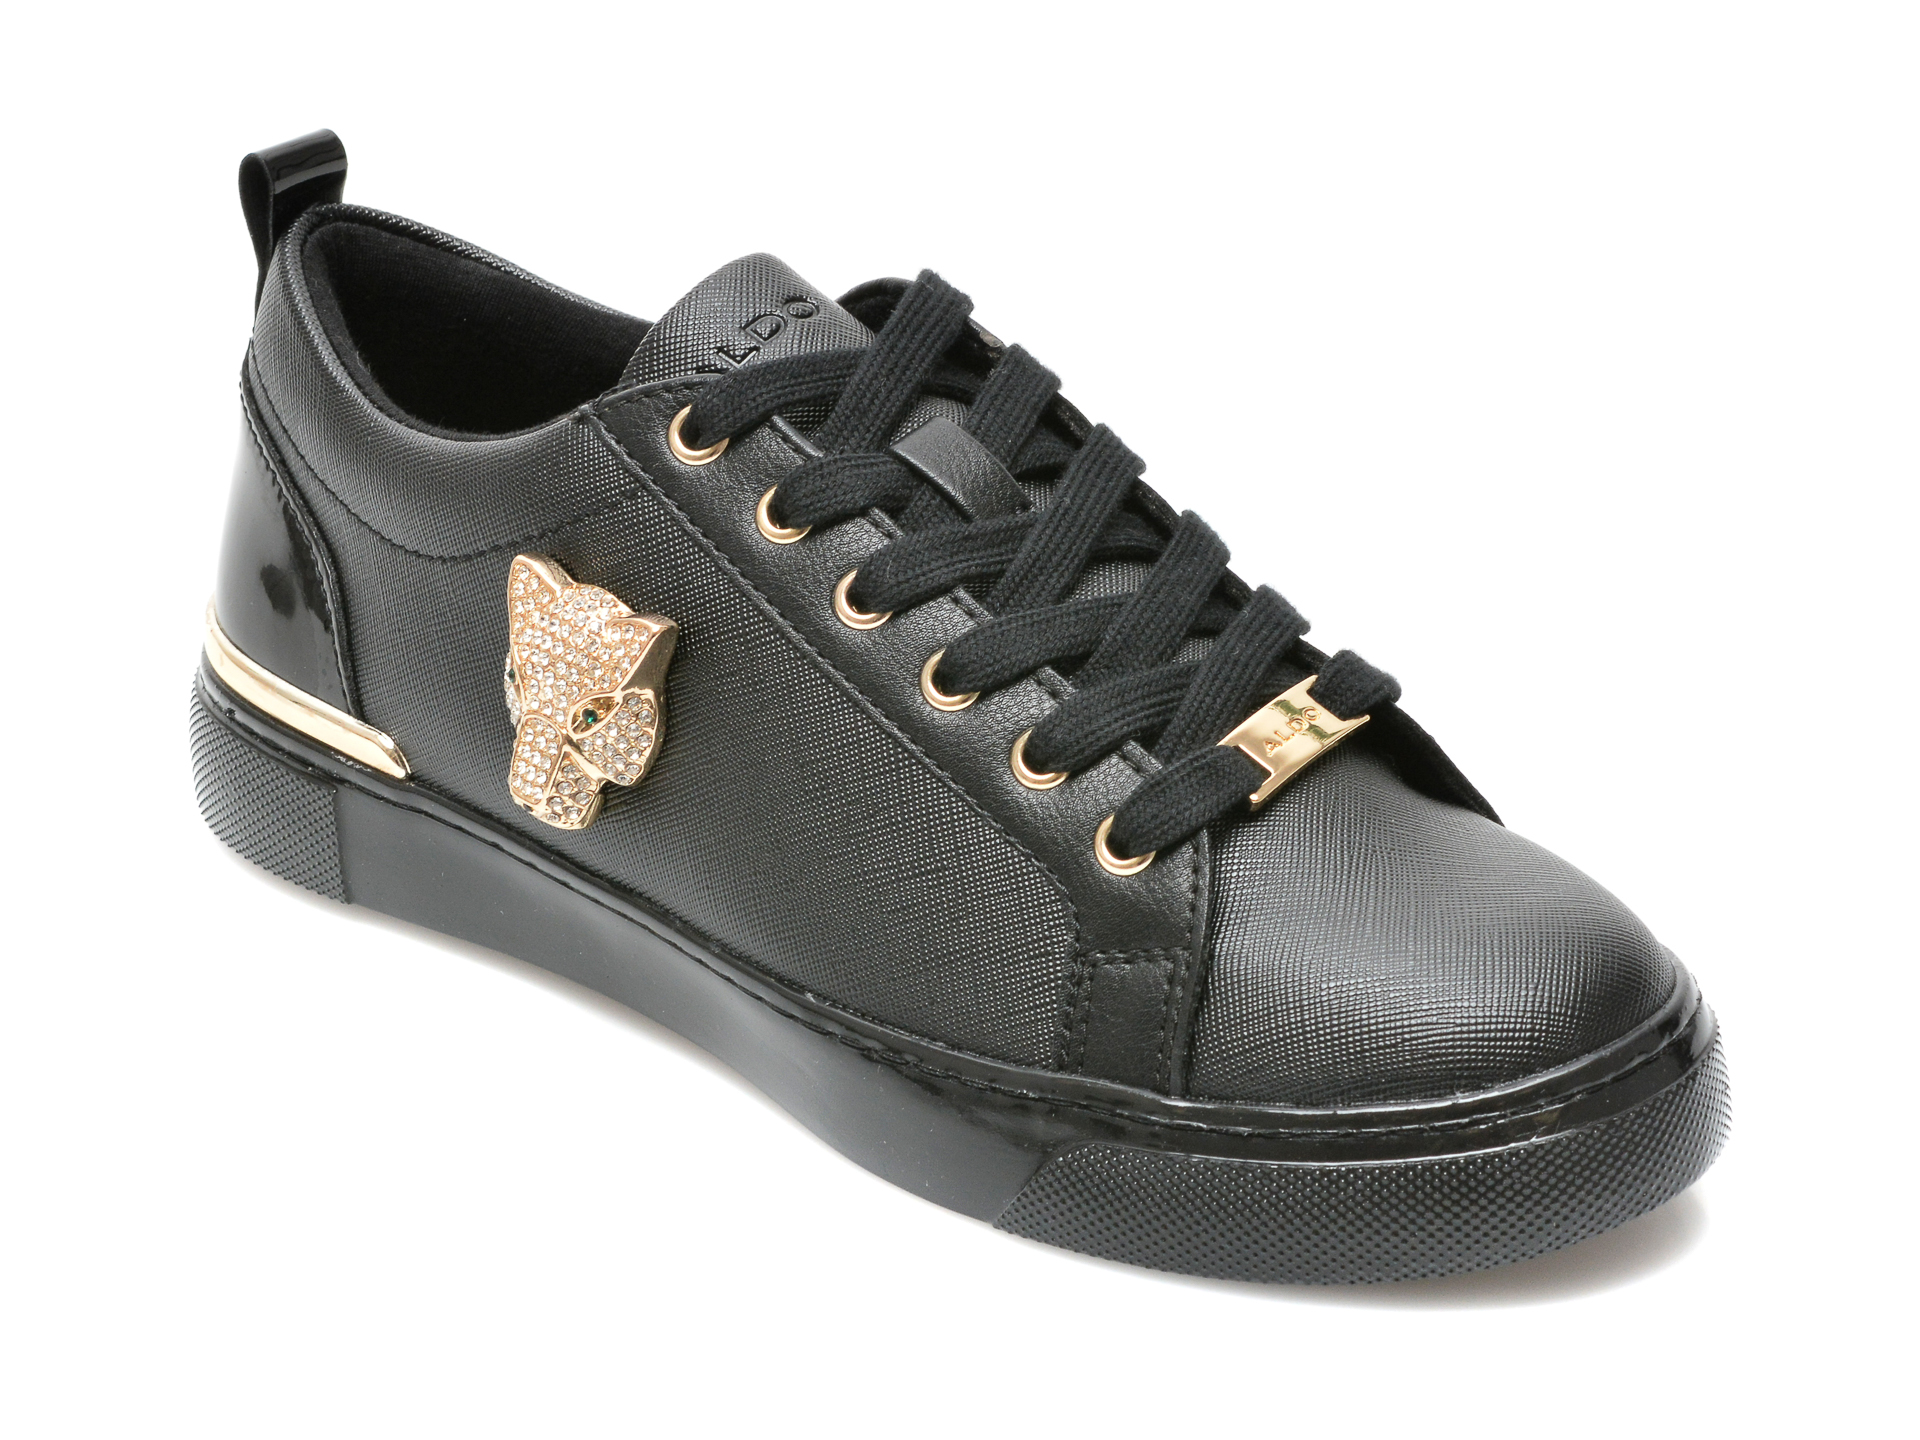 Pantofi ALDO negri, FRAYLDAN001, din piele ecologica Aldo imagine reduceri